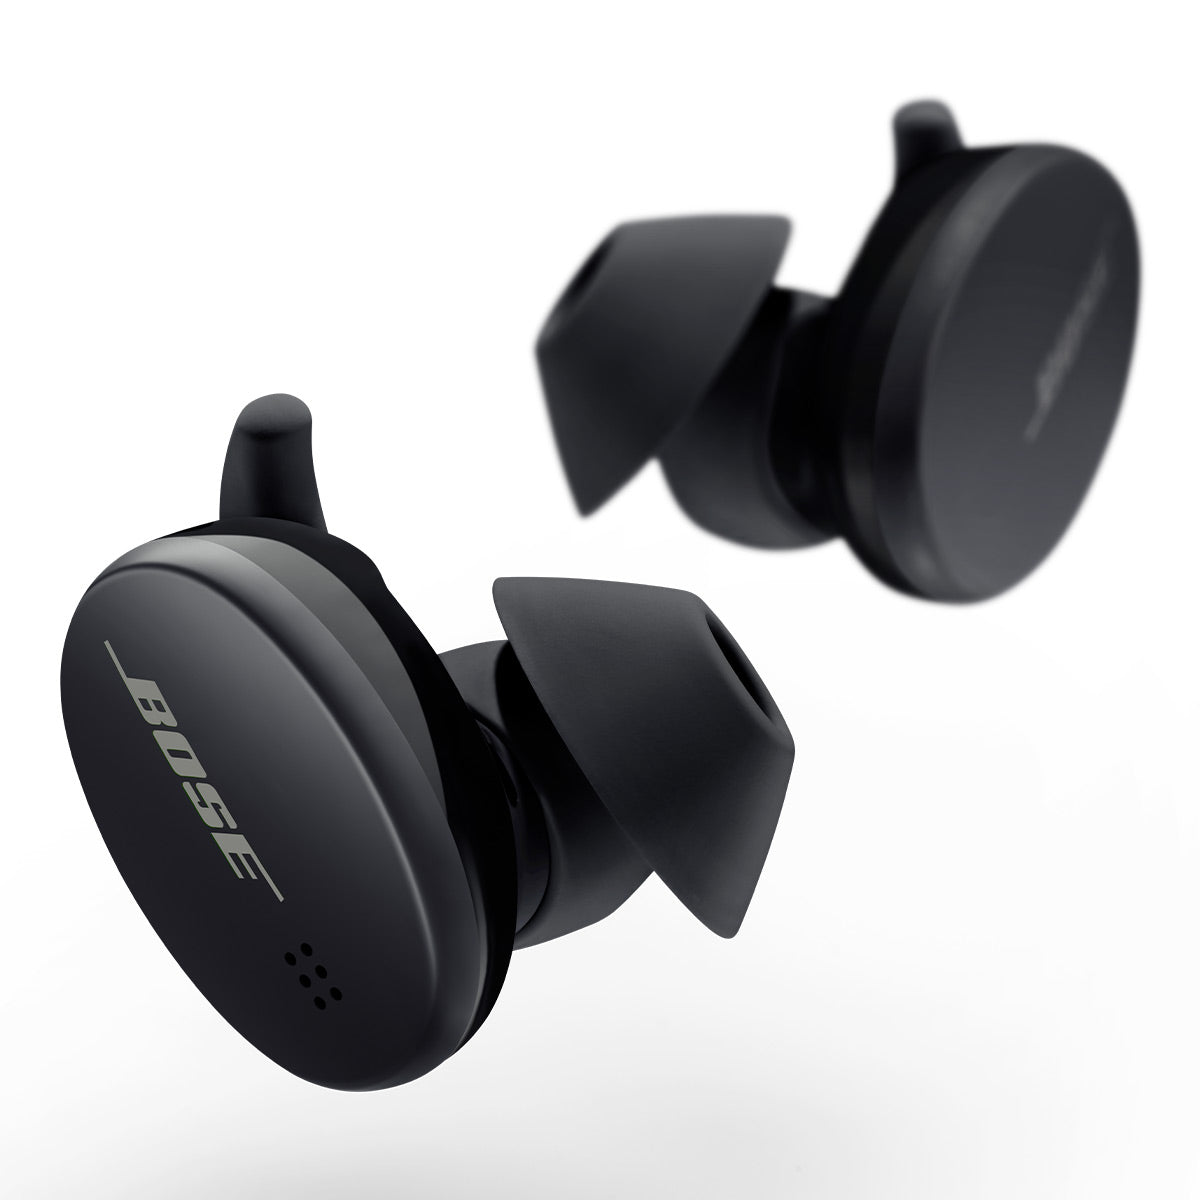 Bose Sport True Wireless Bluetooth Earbuds (Triple Black)